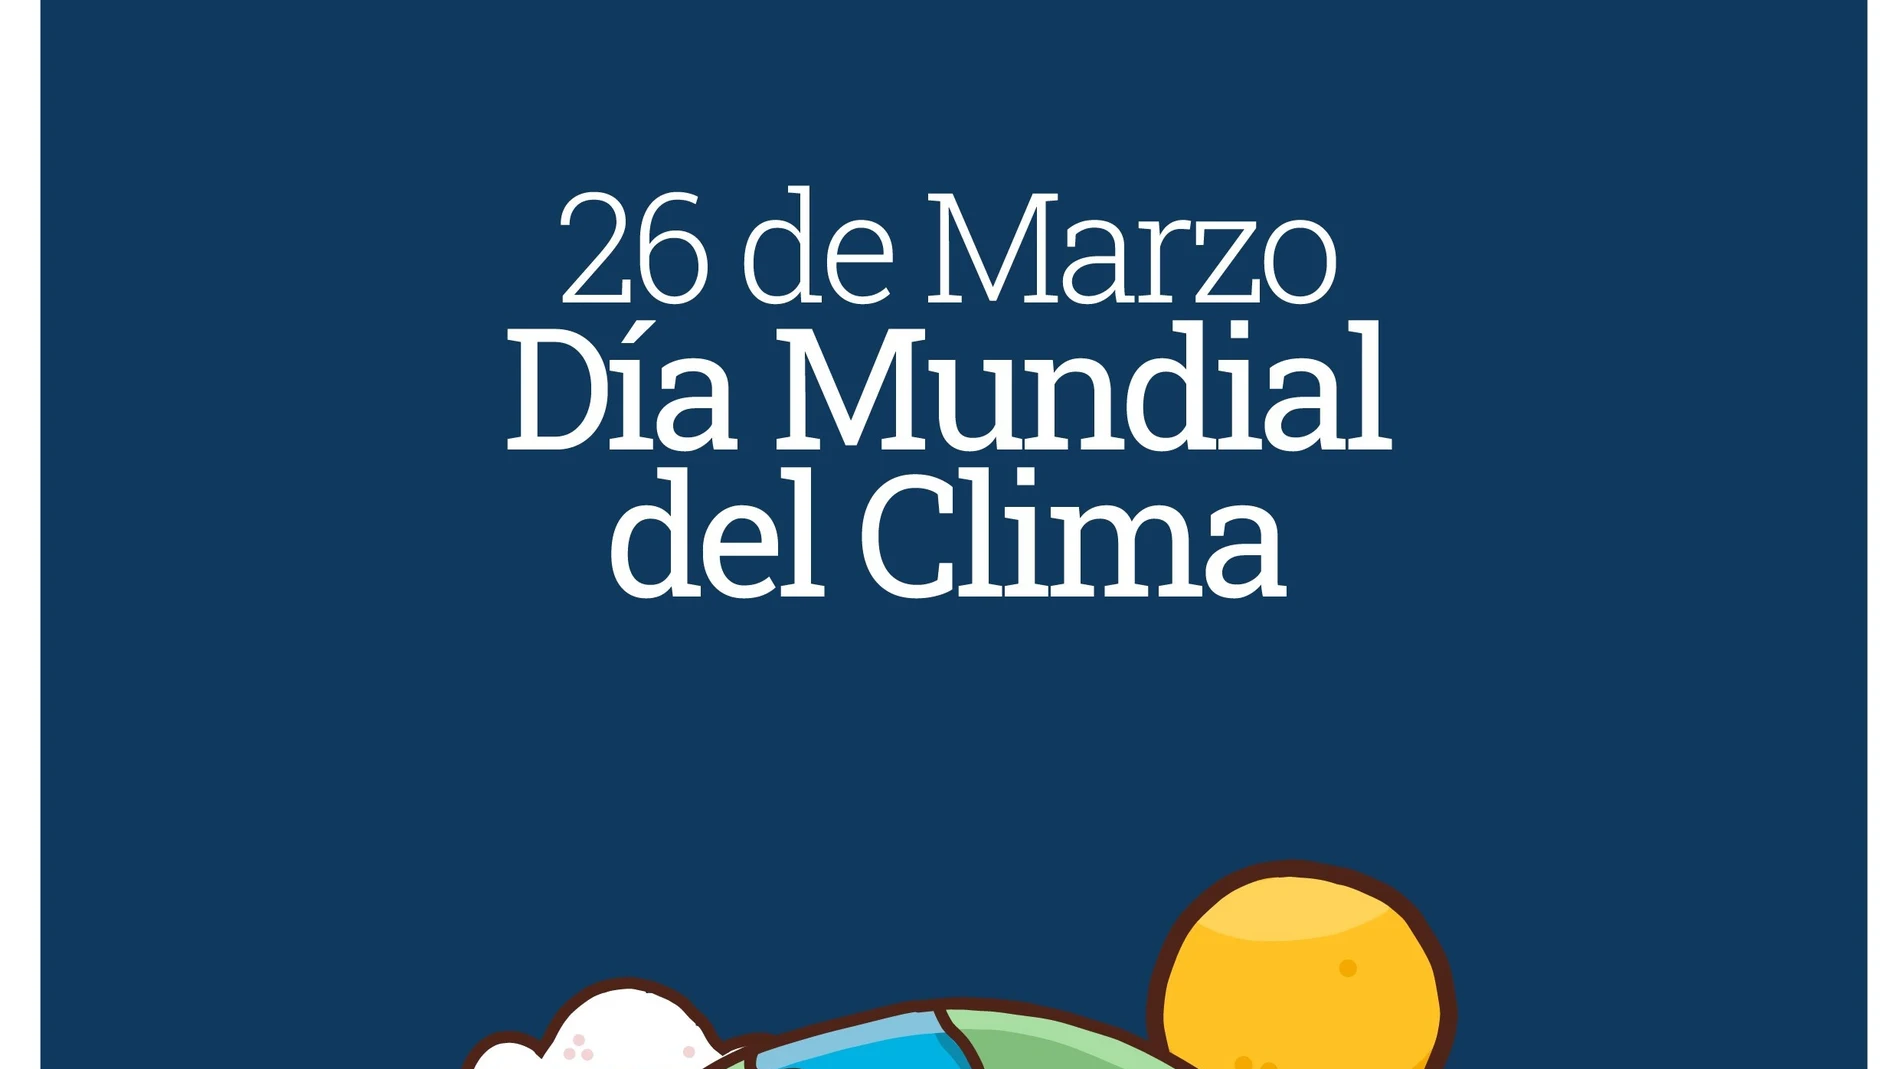 Portada elaborada por la Comunidad con motivo de la celebración del Día Mundial del Clima, que tiene lugar este martes, 26 de marzo